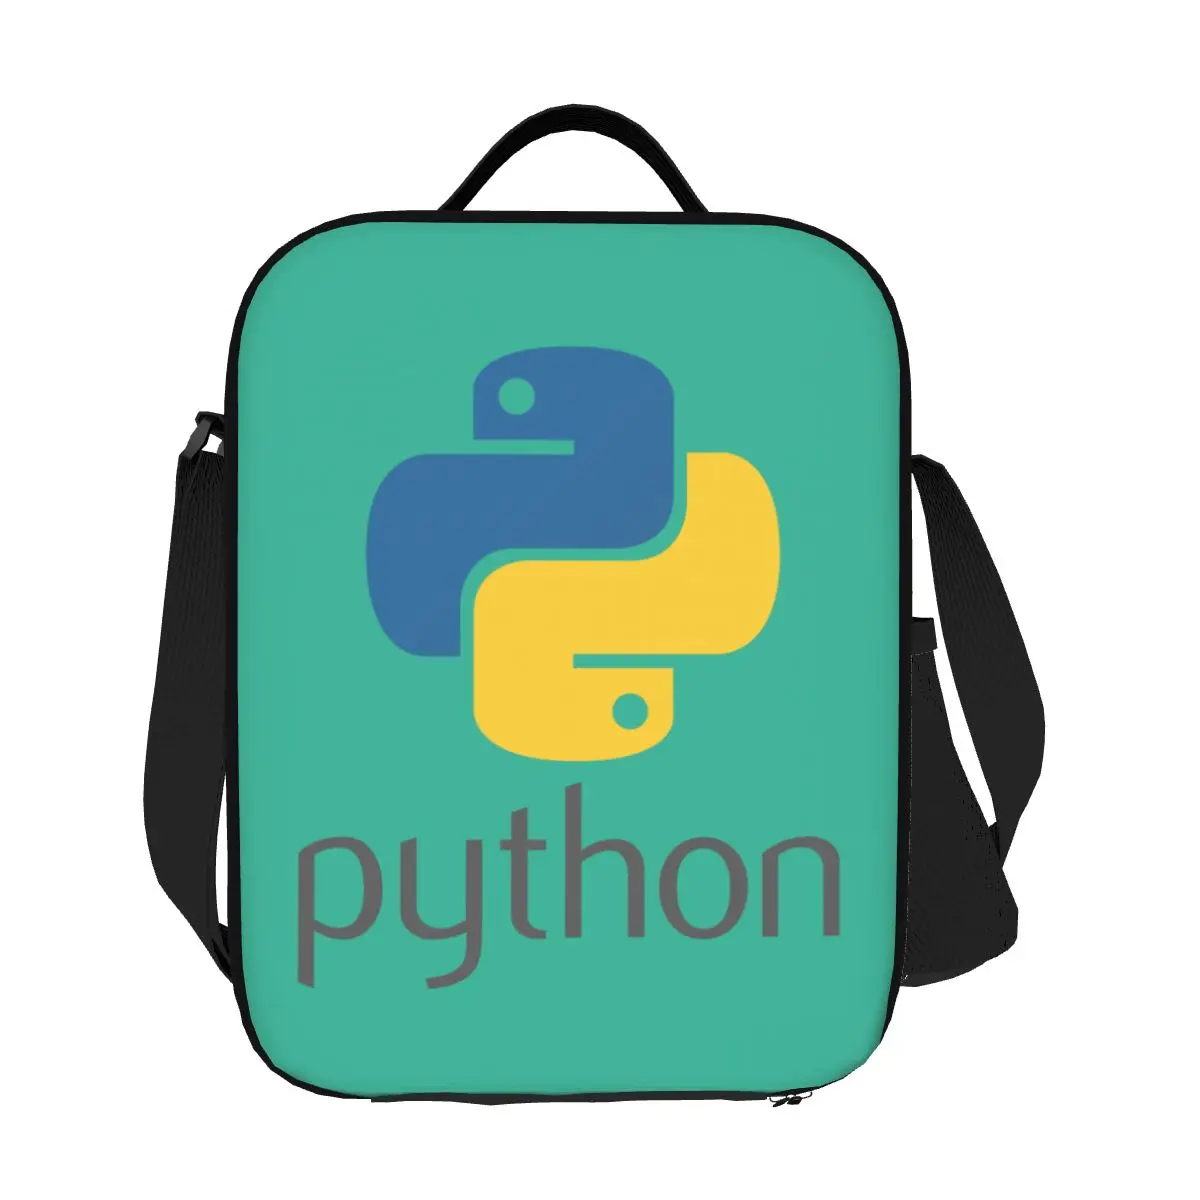 Programador Python Símbolo Aislado de la Bolsa de Almuerzo para el Trabajo de la Escuela Equipo Desarrollador de Programación Programador Enfriador Térmico de la Caja de Almuerzo . ' - ' . 3